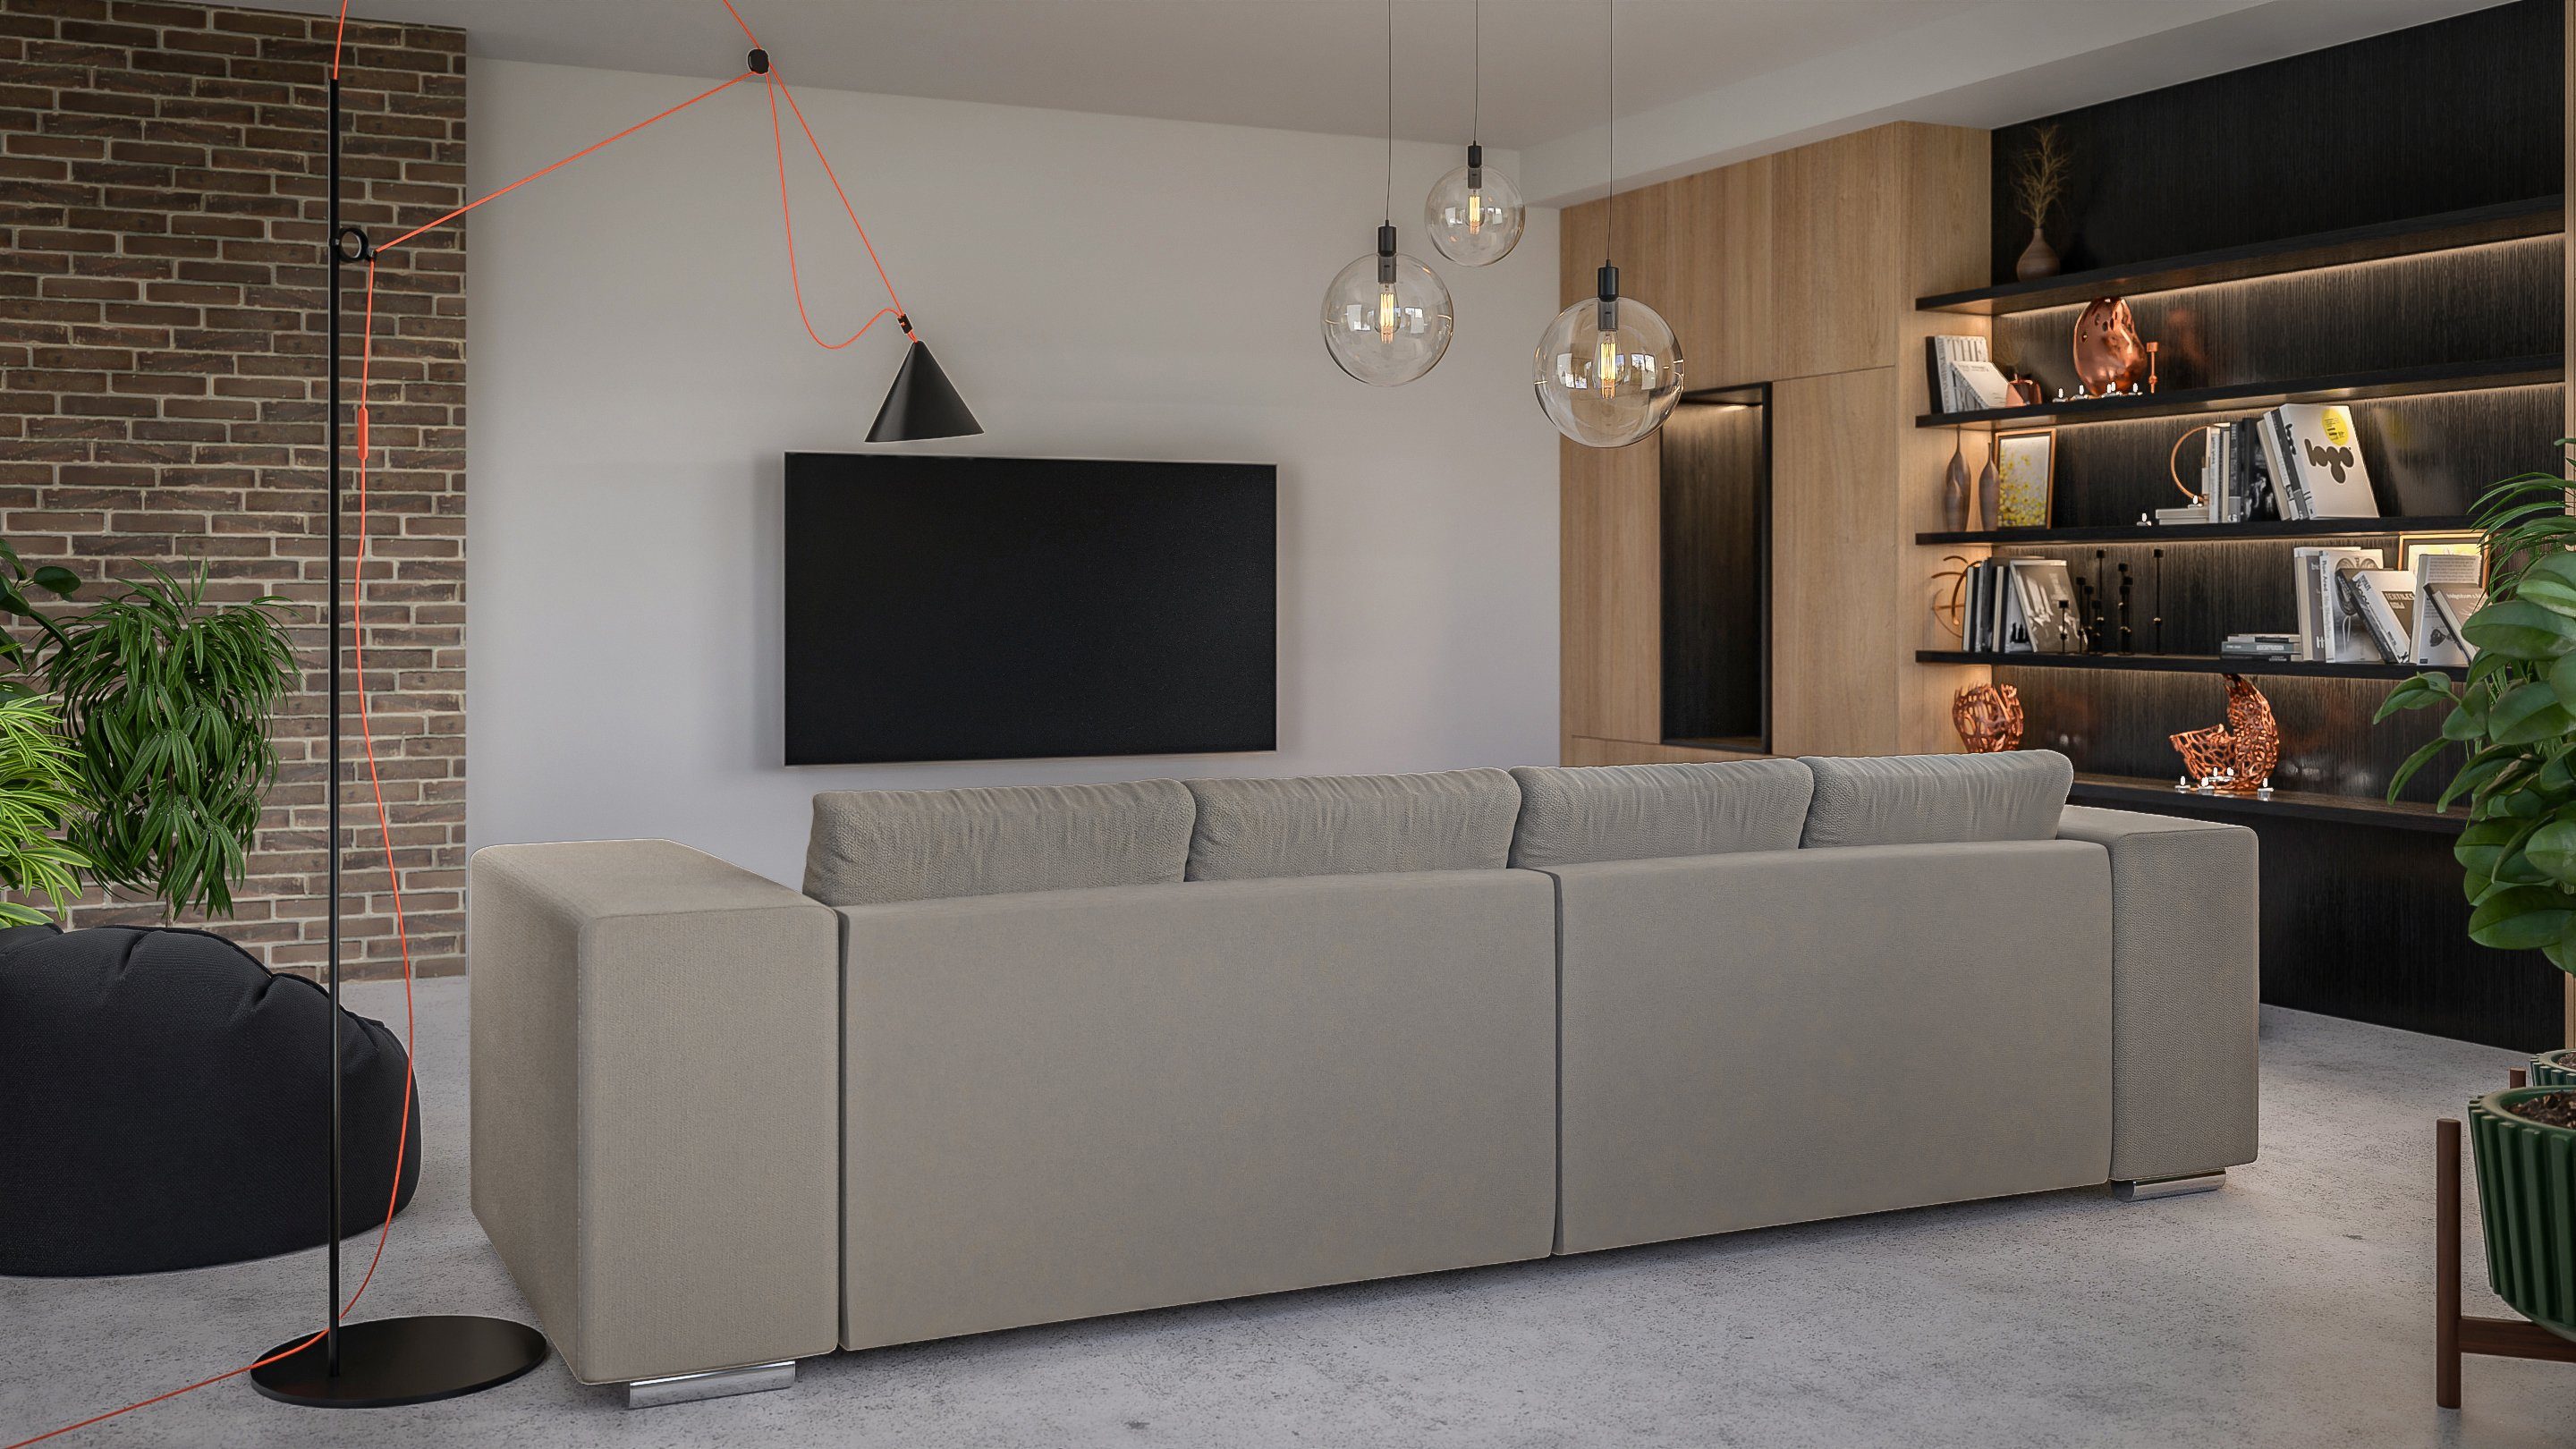 Schlaffunktion, S-Style mit 5-Sitzer Wellenfederung Cork Möbel Big-Sofa mit Dunkelbeige